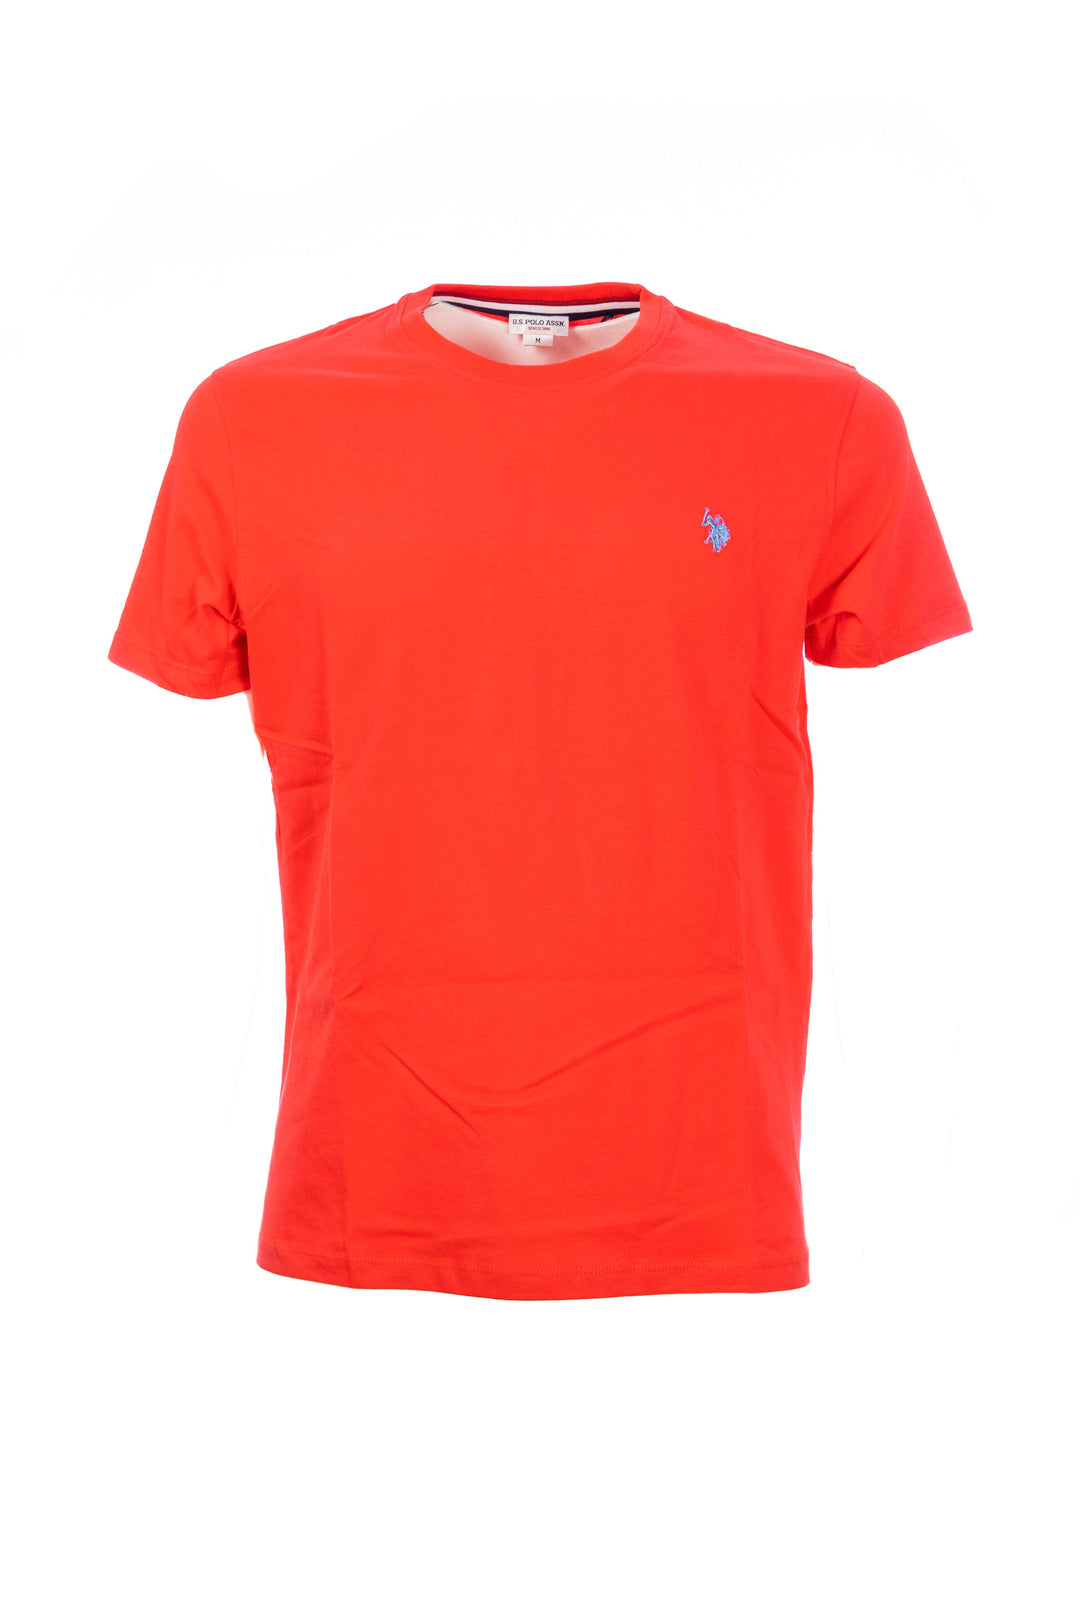 U.S. POLO ASSN. T-shirt arancione in cotone con logo ricamato sul petto - Mancinelli 1954